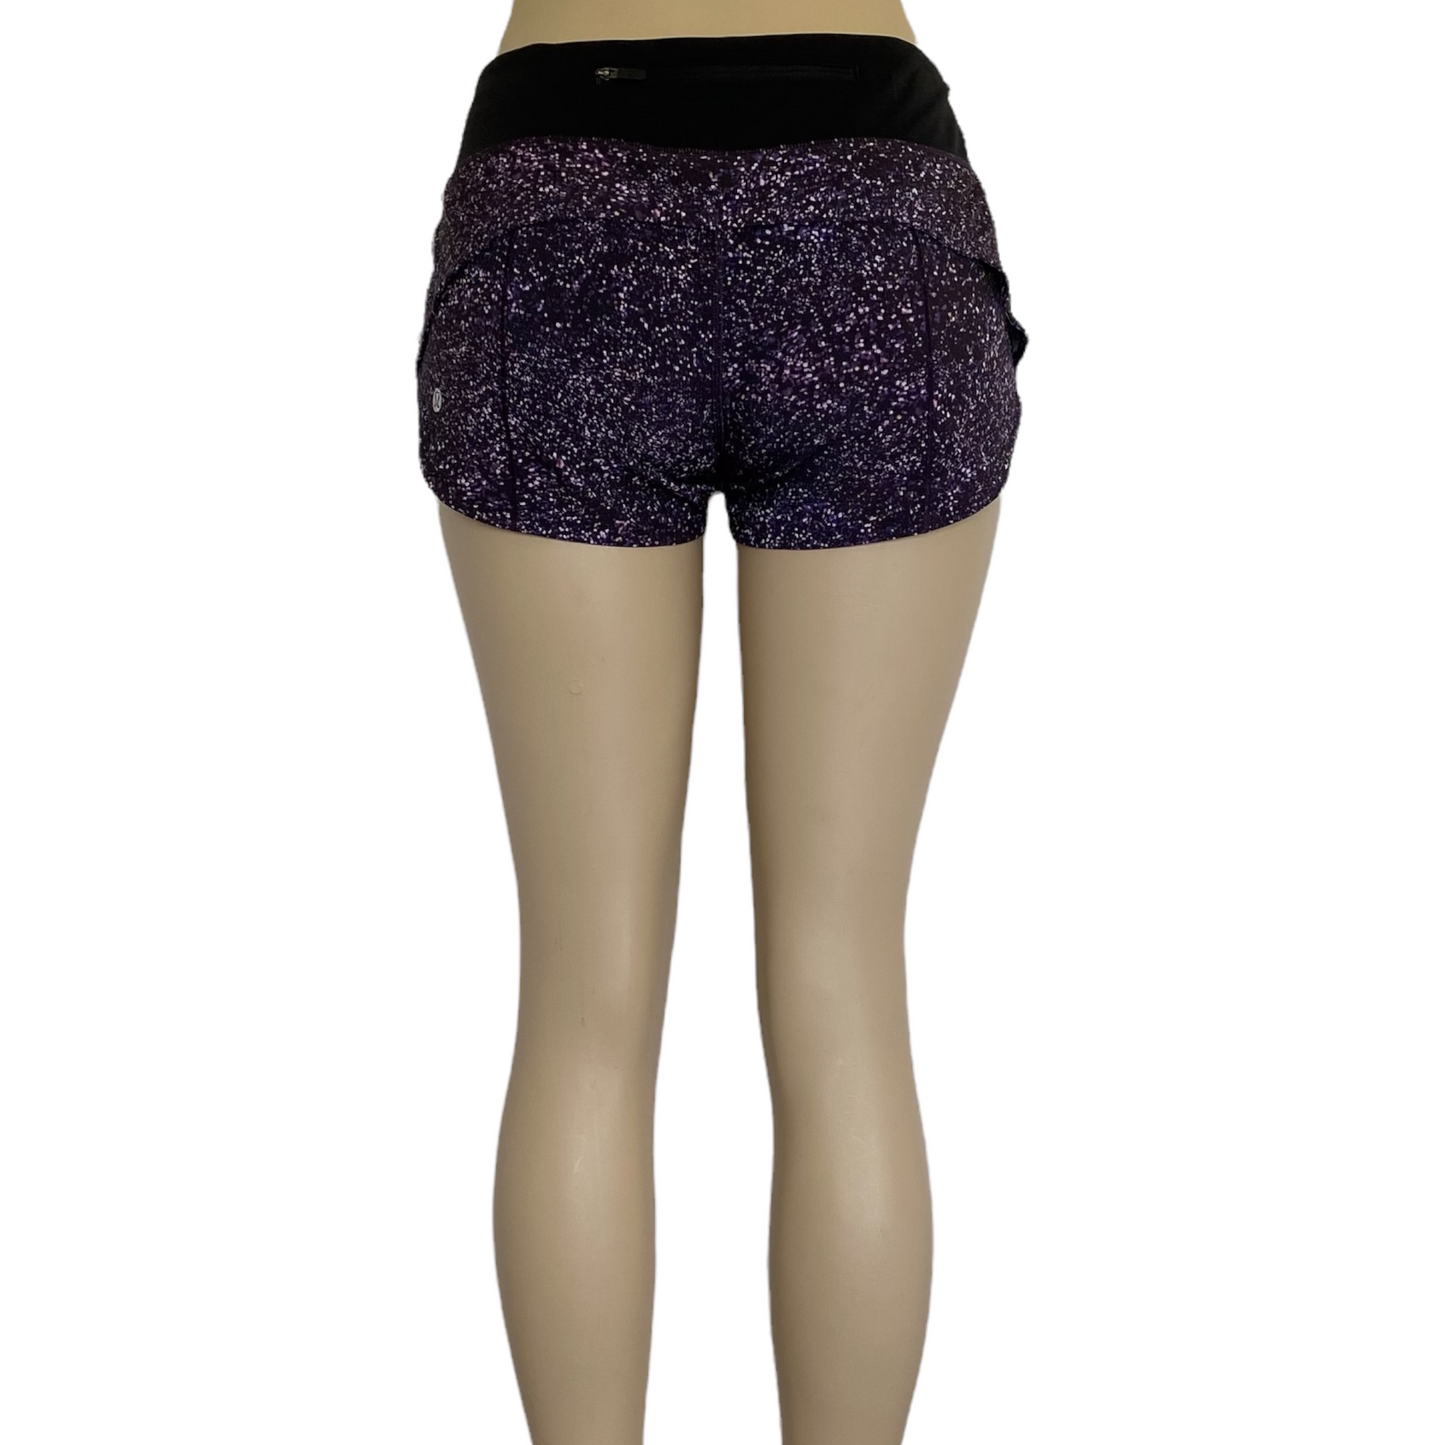 RARE Lululemon Speed Up Shorts 2.5” Size 4